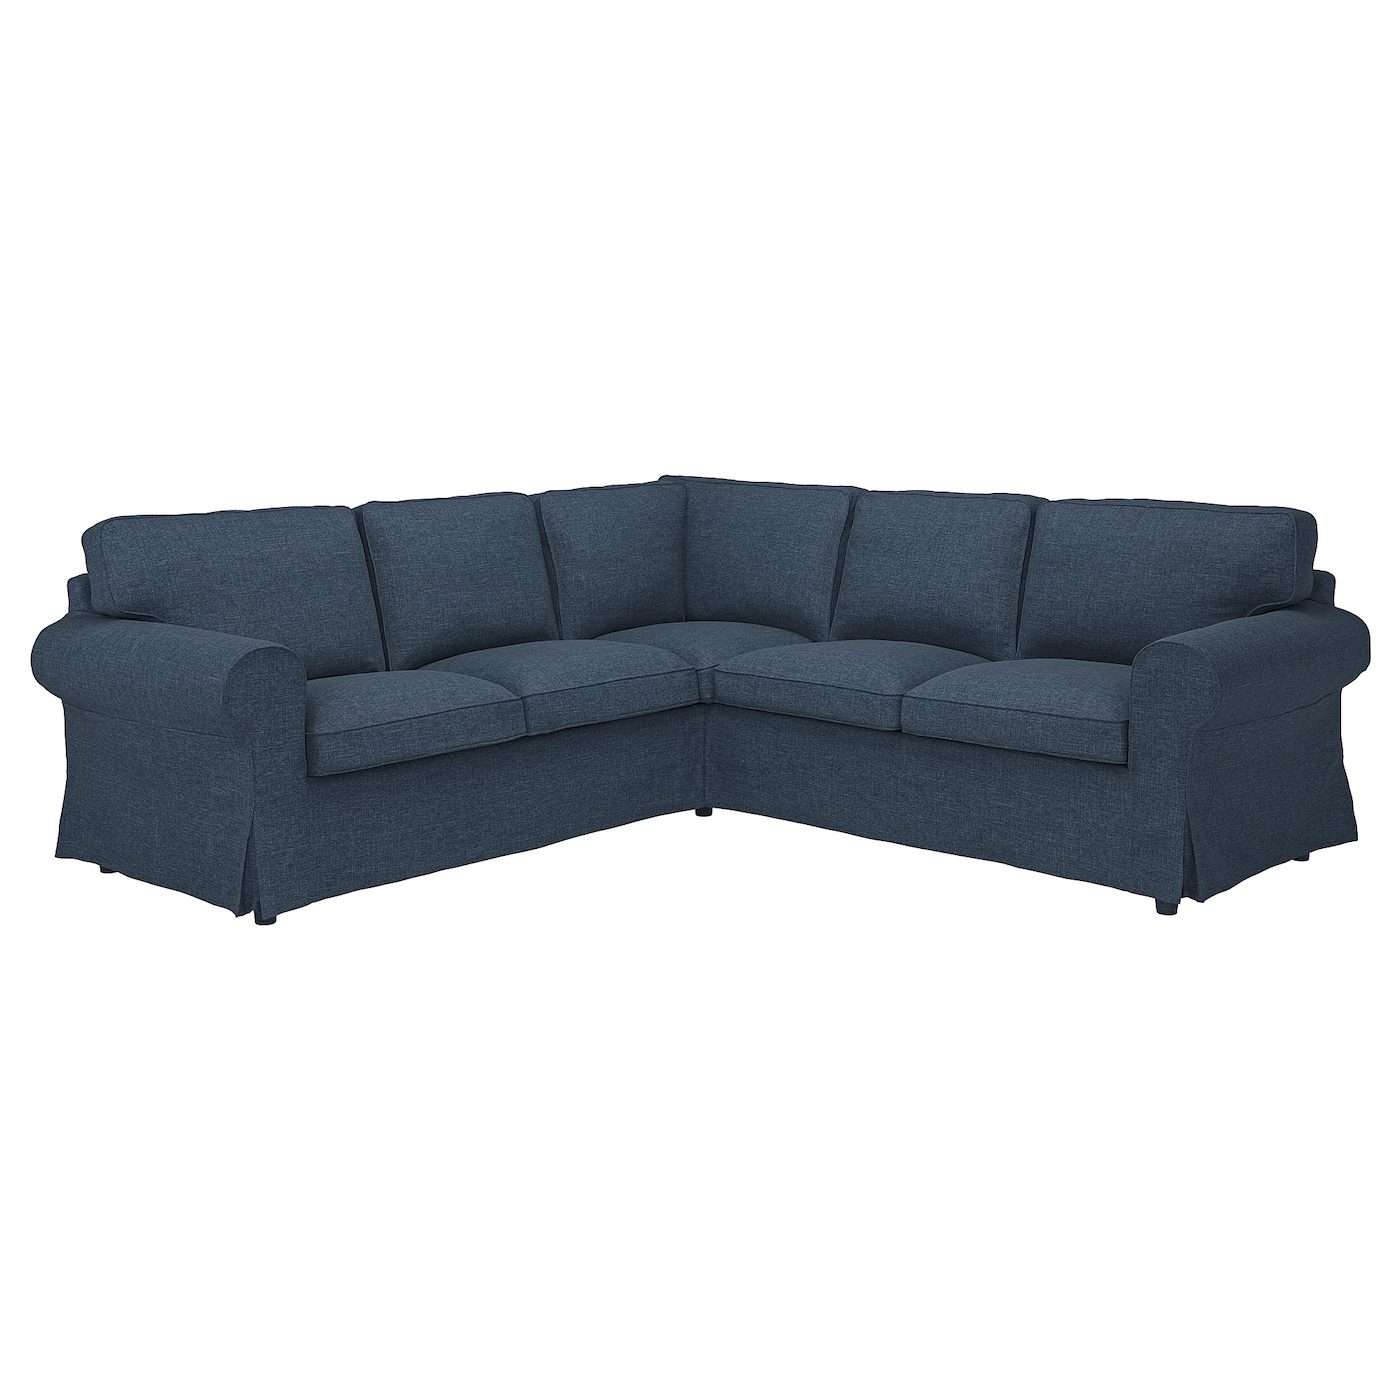 ЭКТОРП 4-местный угловой диван, Киланда темно-синий EKTORP IKEA